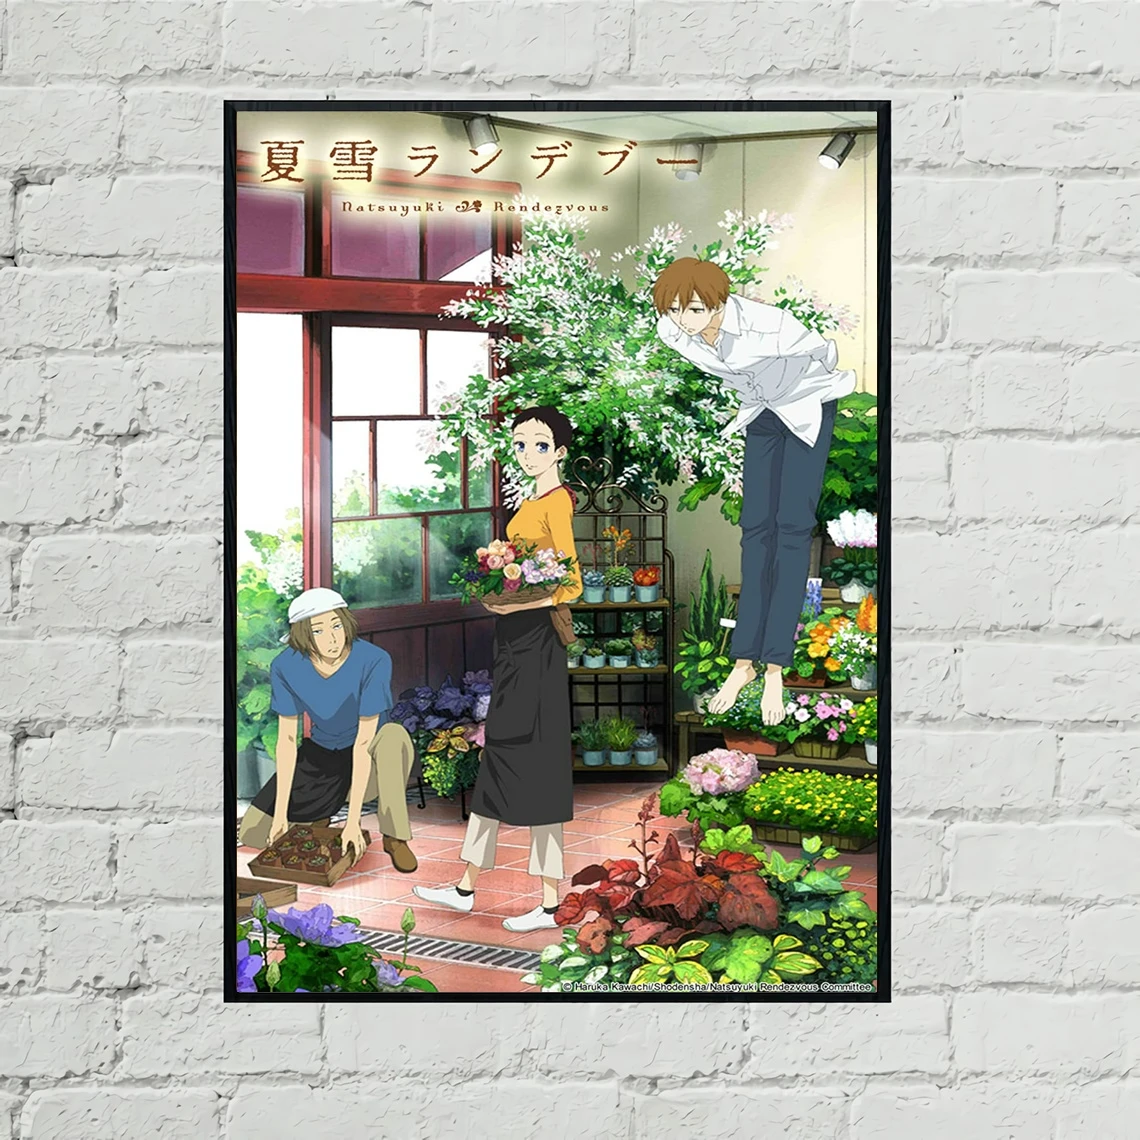 

Нацуюки свидание аниме постер печать на холсте японский хит новая драма Обложка картины для украшения стен подарок индивидуальный постер